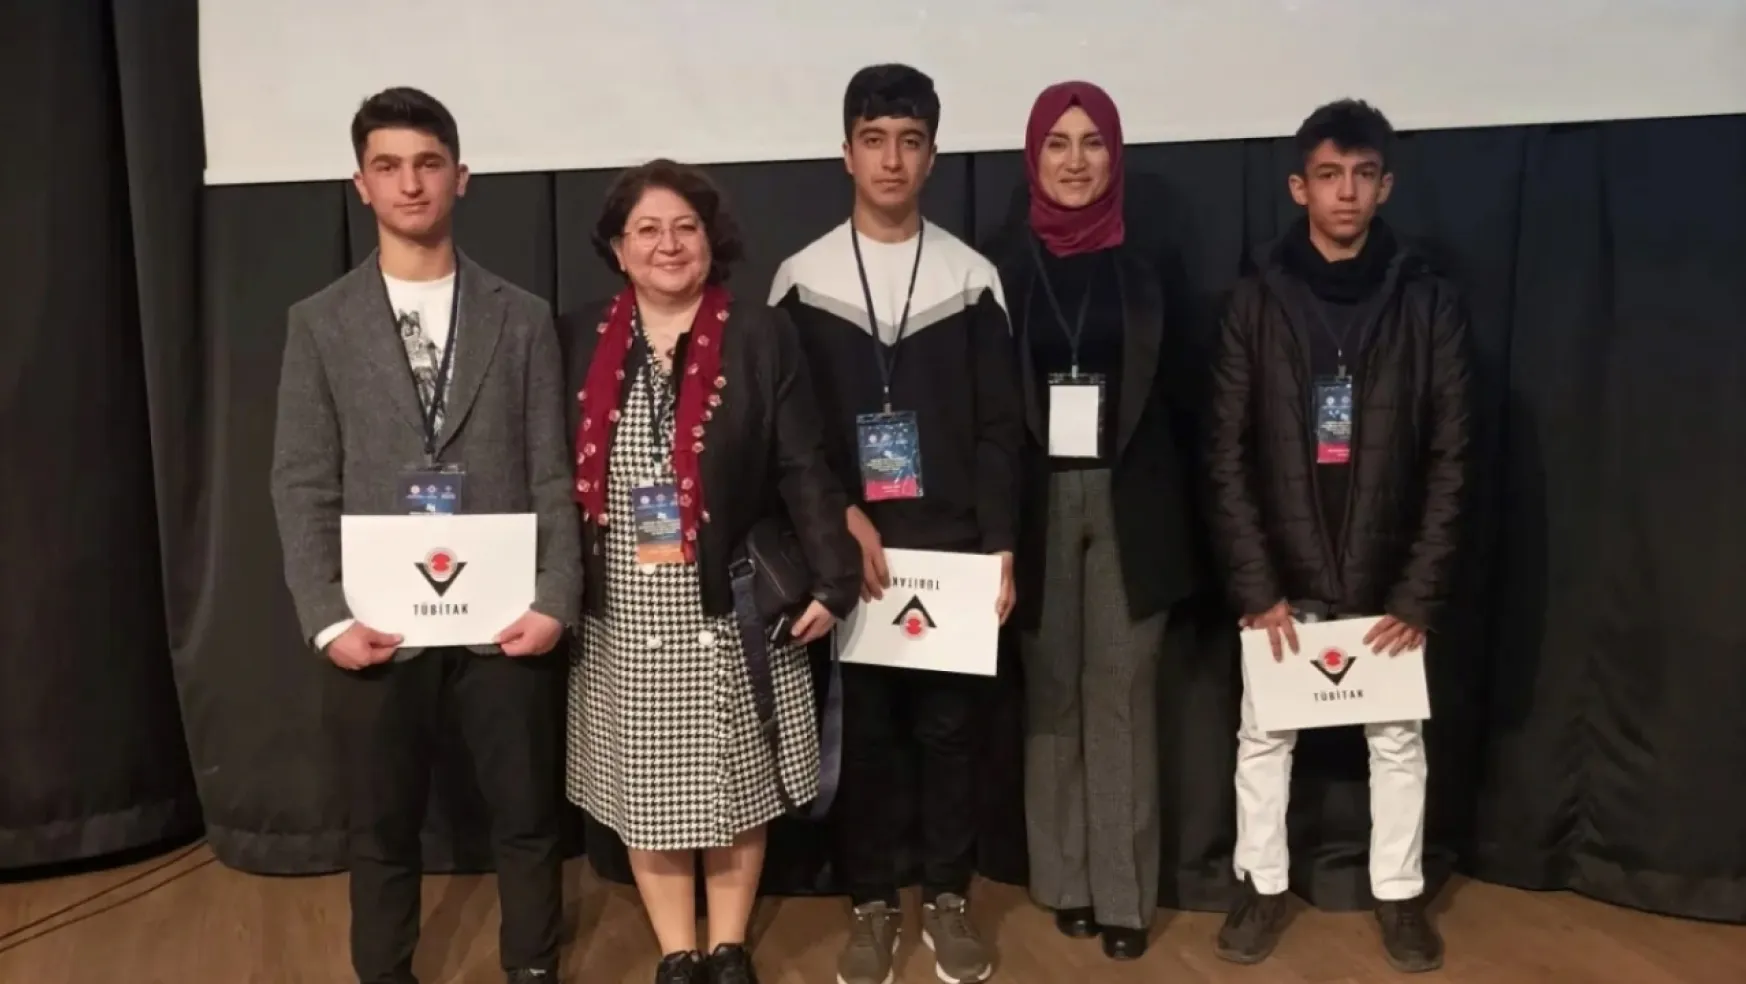 Ebu Sadık Anadolu İmam Hatip Lisesi Malatya Bölge Yarışması'nda birinci oldu